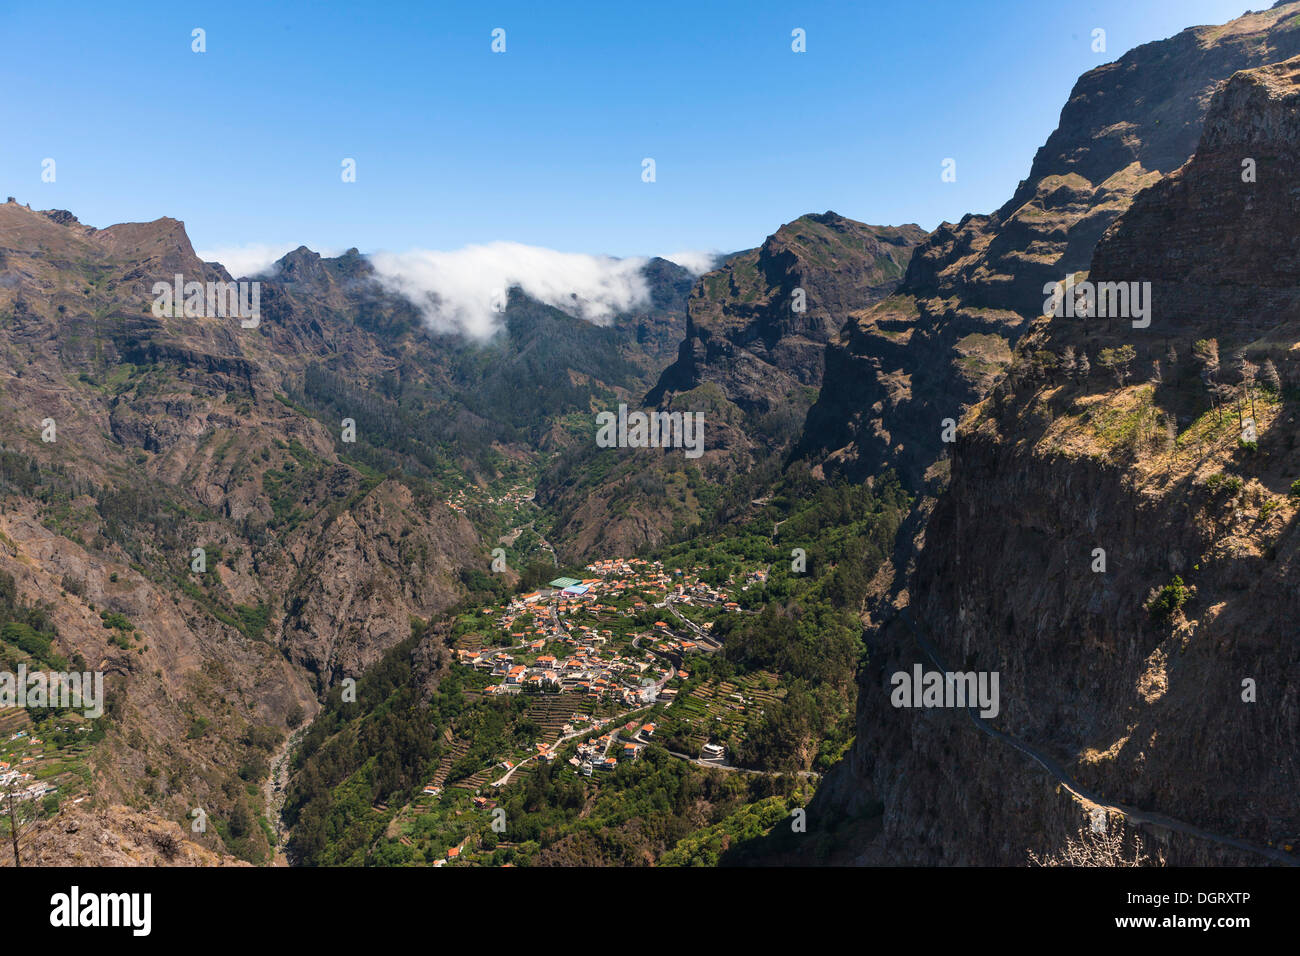 Village of Curral das Freiras in the mountains, Pico dos Barcelos with its deep gorges, Curral das Freiras, Funchal, Madeira Stock Photo